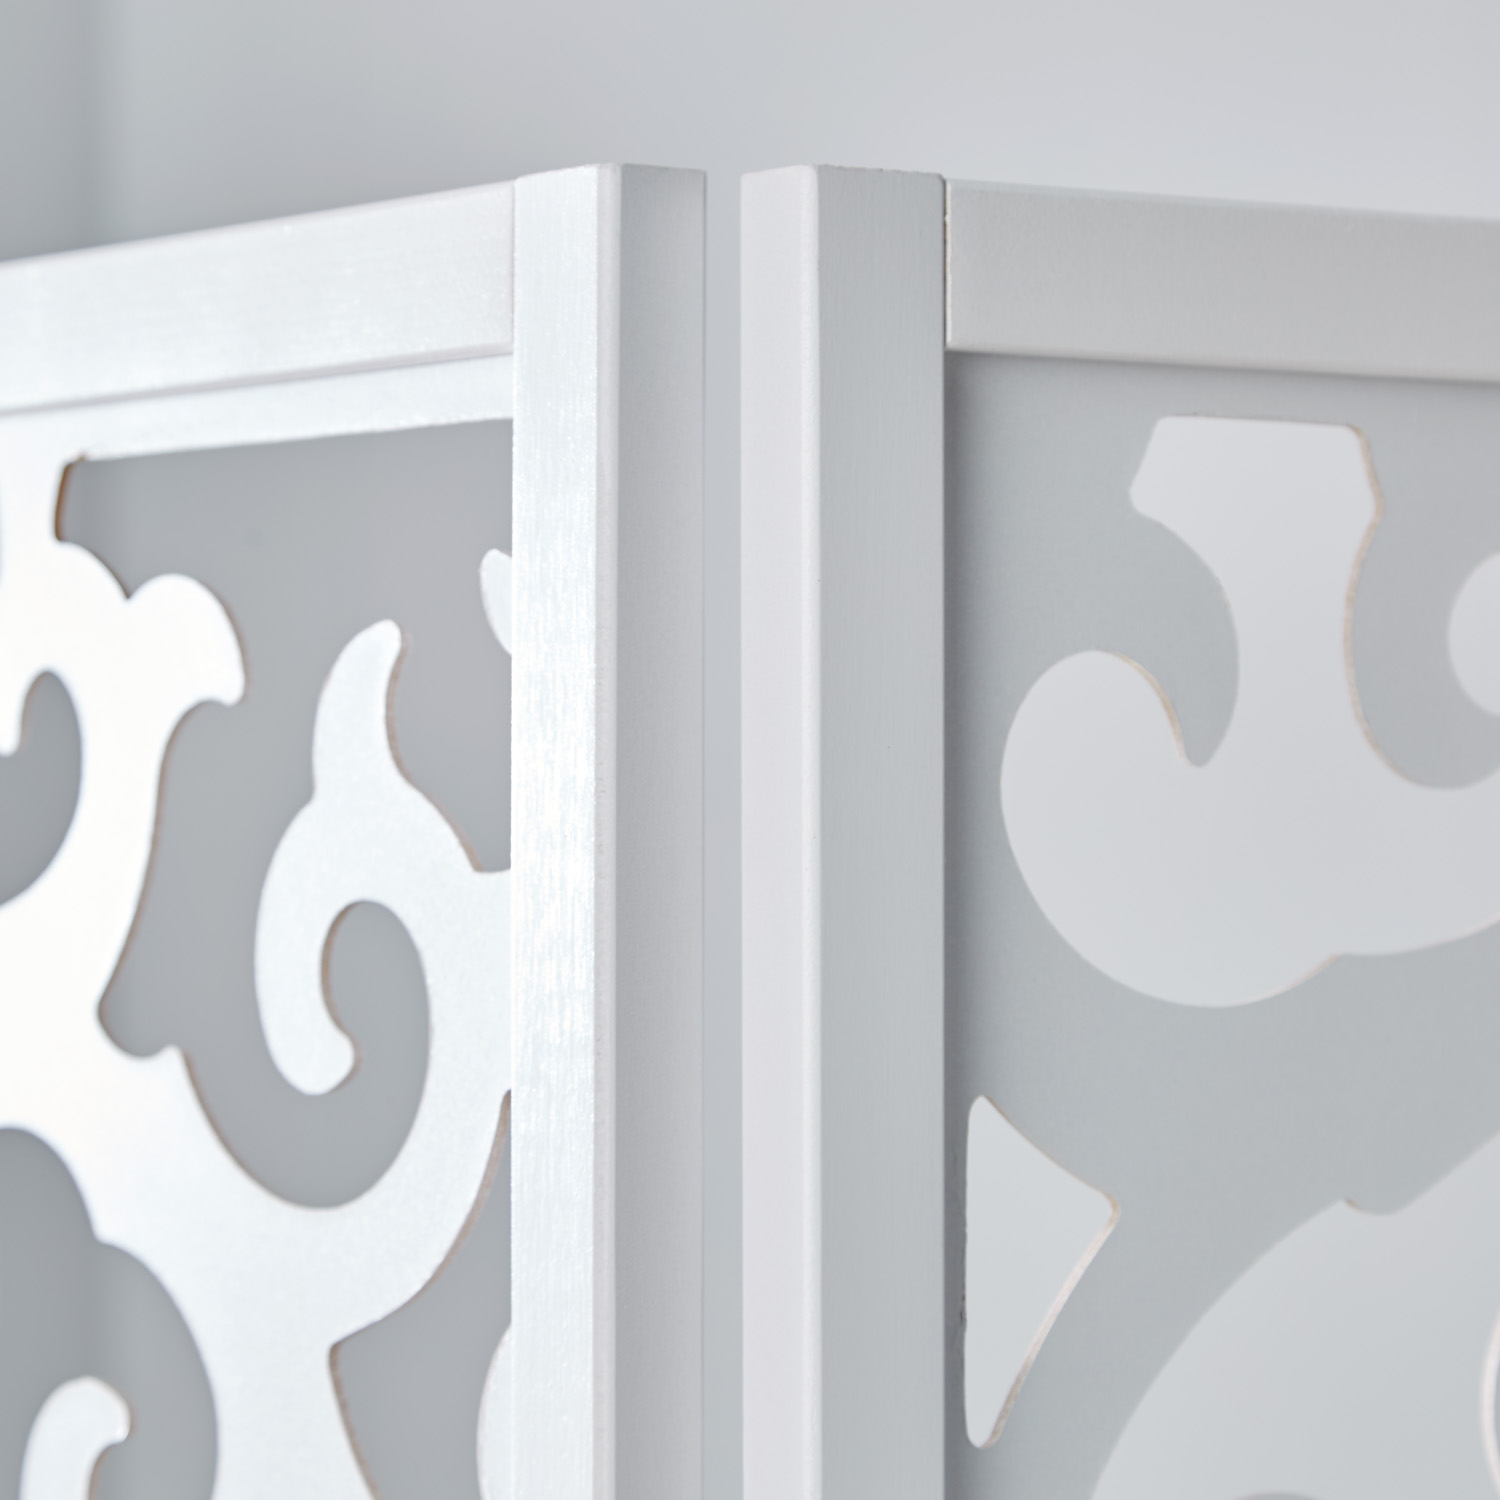 Paravent Raumteiler 3 oder 4 teilig Trennwand spanische Wand Sichtschutz Holz Weiß